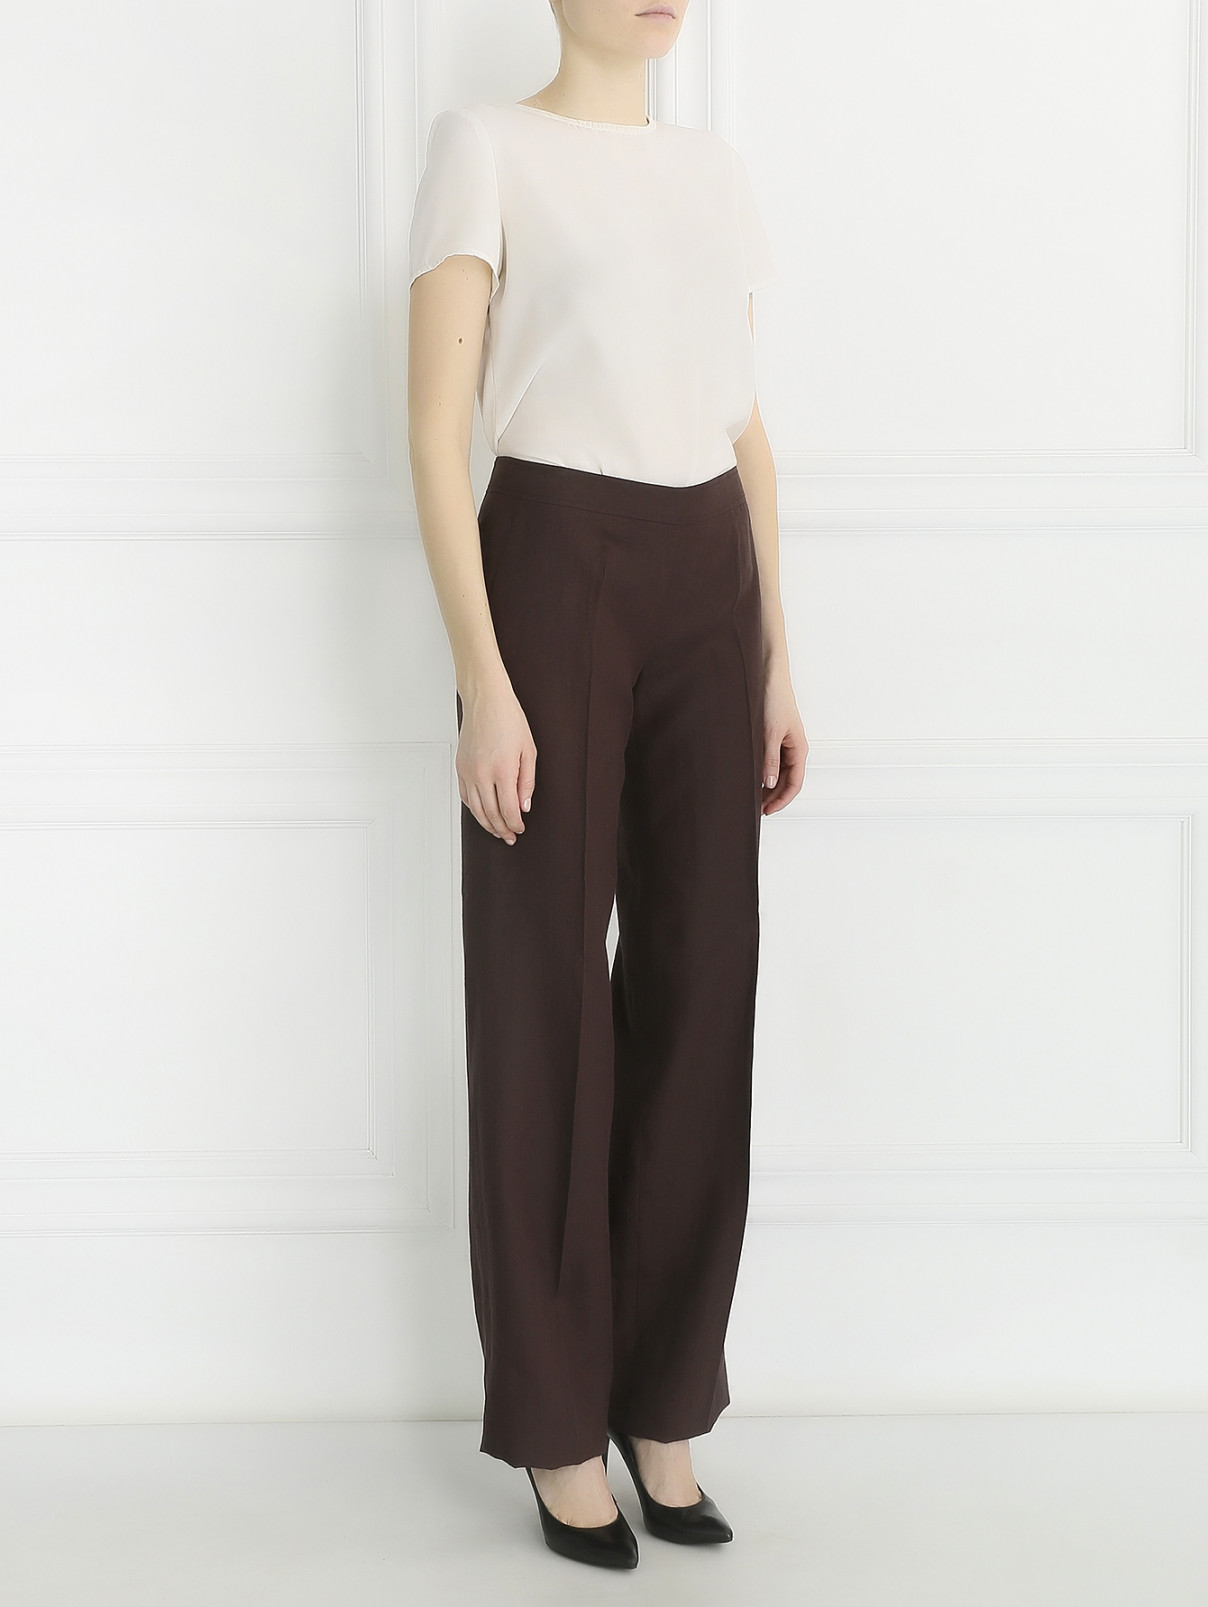 Широкие брюки изо льна с карманами Max Mara  –  Модель Общий вид  – Цвет:  Коричневый